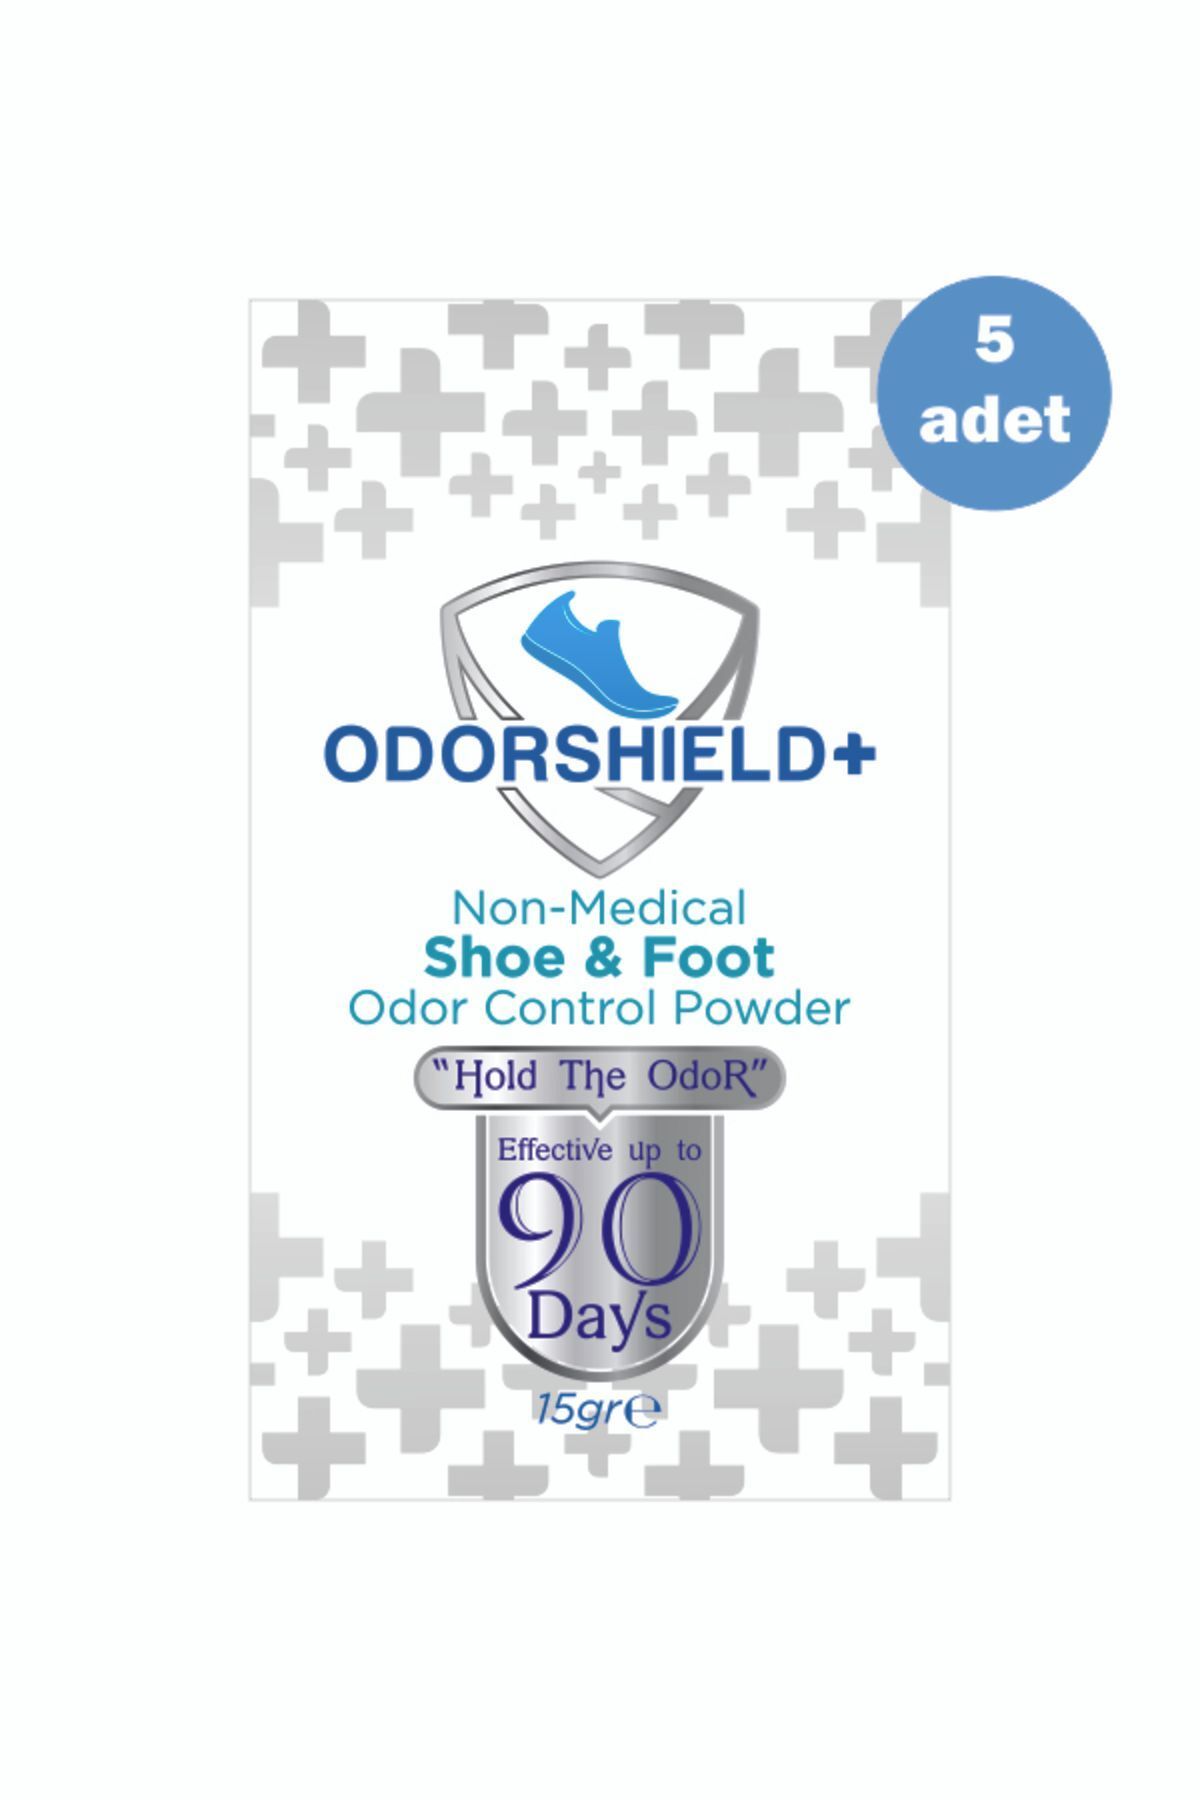 Odorshield+ 5 Adet Ayak Koku Giderici - Ayakkabı Koku Giderici Toz - 90 Gün Etkili